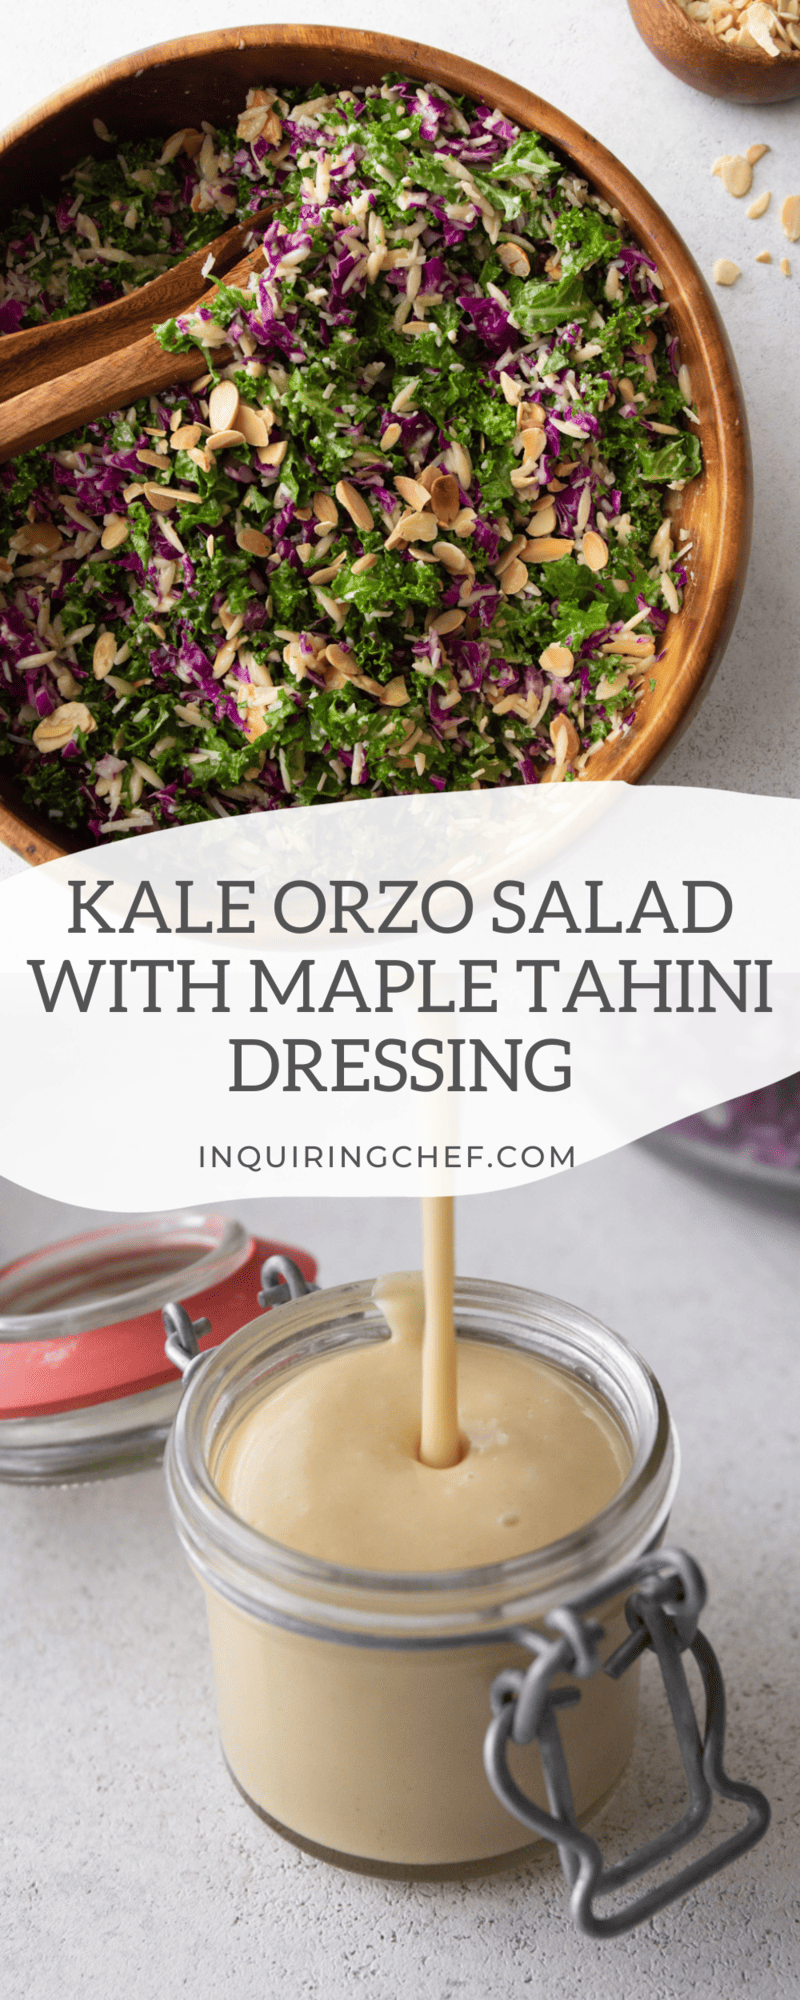 kale orzo salad